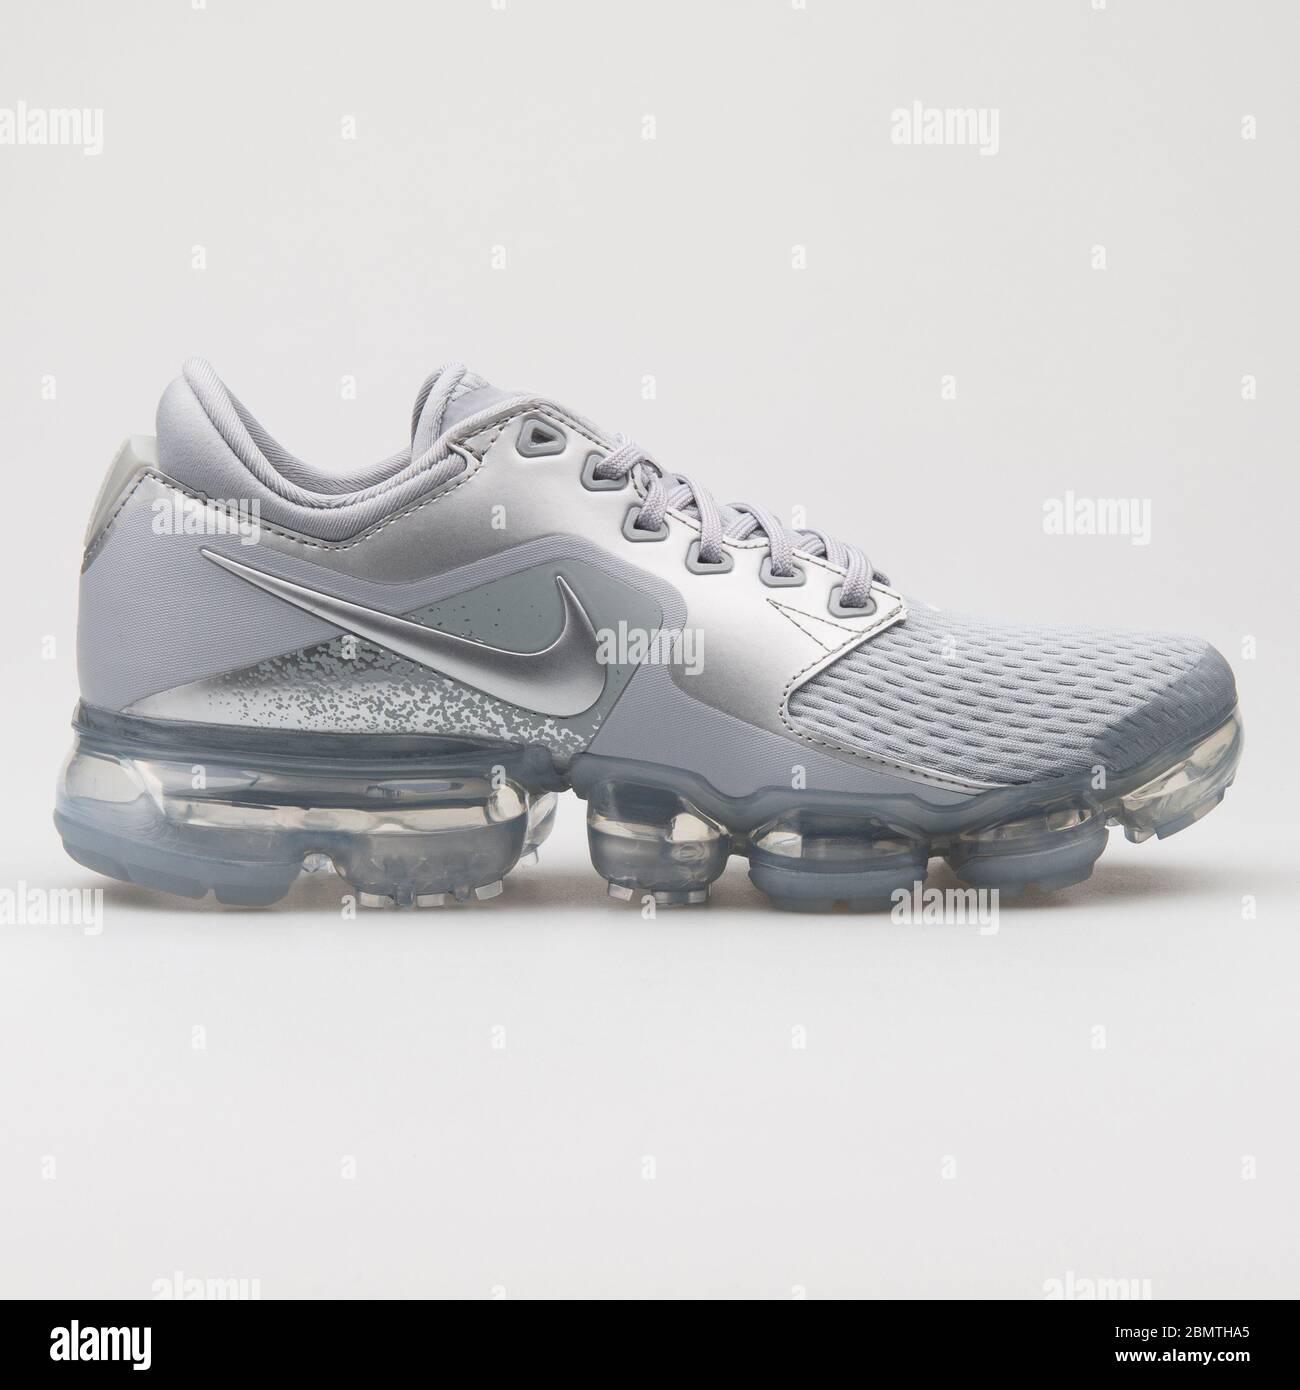 VIENNE, AUTRICHE - 12 JANVIER 2018 : sneaker Nike Air Vapormax gris et  argent métallique sur fond blanc Photo Stock - Alamy